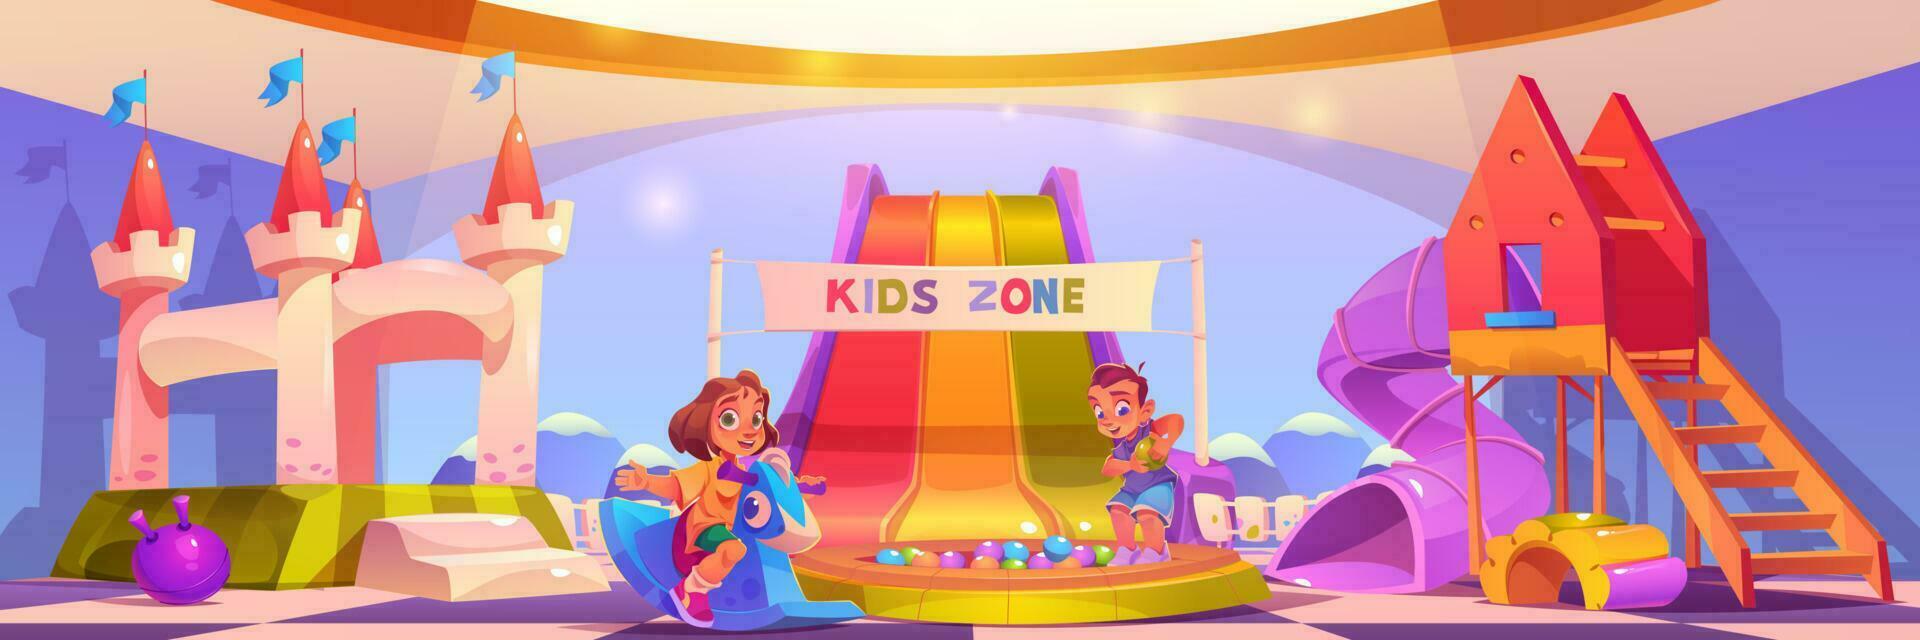 Kids playground, kindergarten cartoon illustration vector